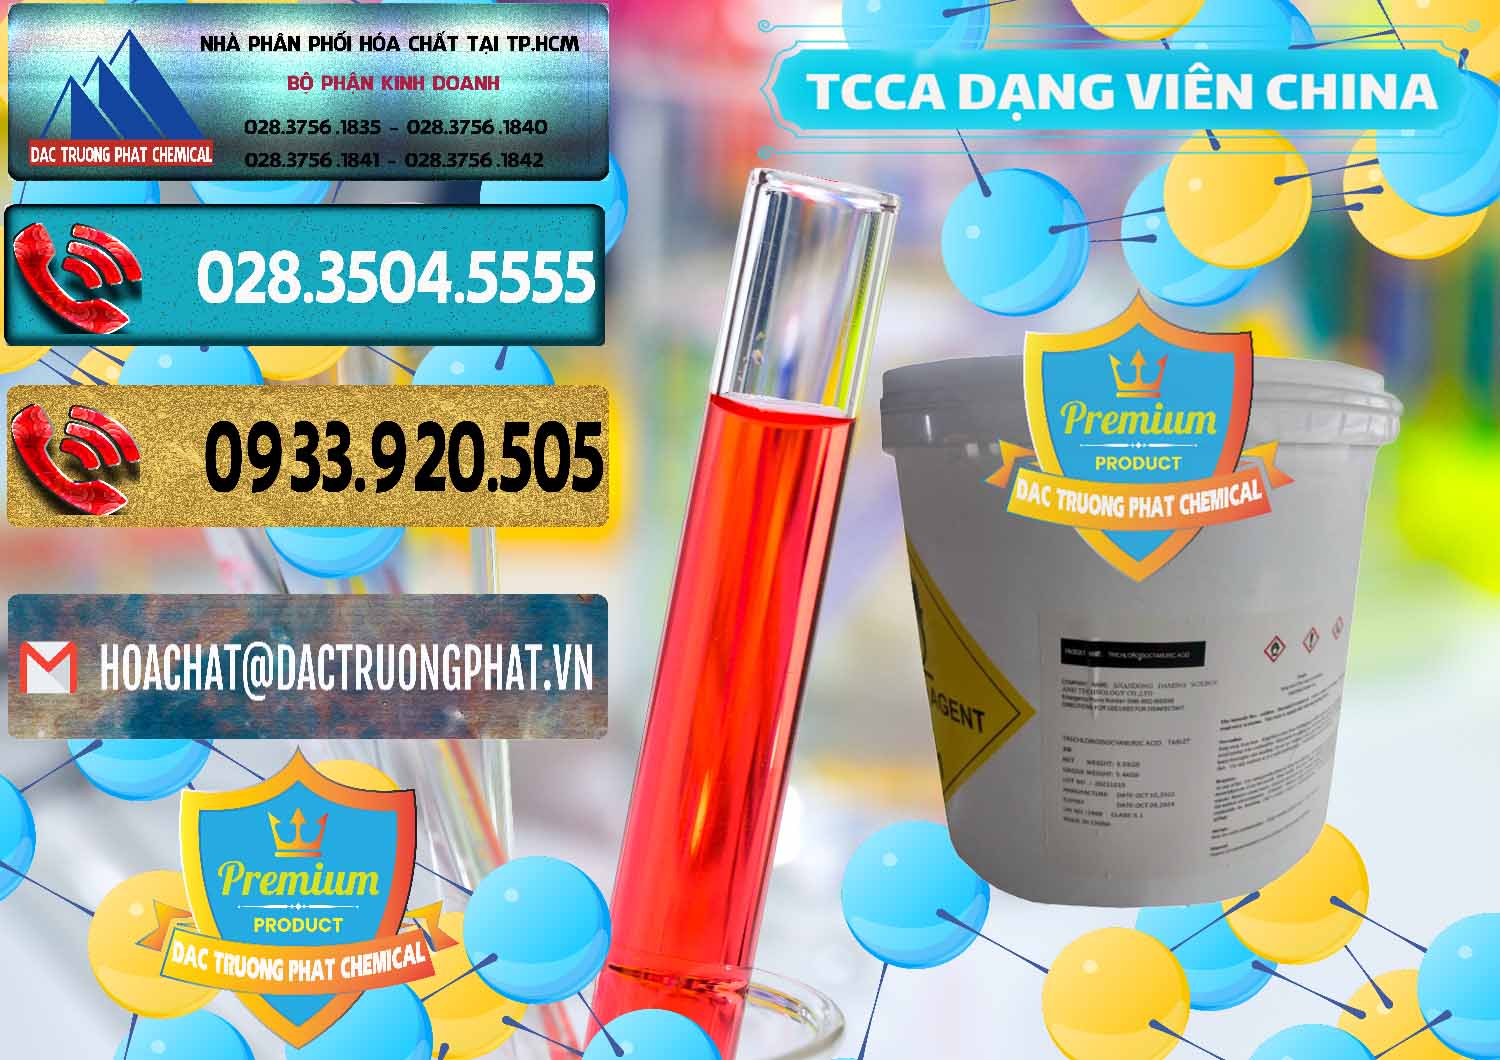 Chuyên bán ( cung cấp ) TCCA - Acid Trichloroisocyanuric Dạng Viên Thùng 5kg Trung Quốc China - 0379 - Công ty phân phối & cung ứng hóa chất tại TP.HCM - hoachatdetnhuom.com